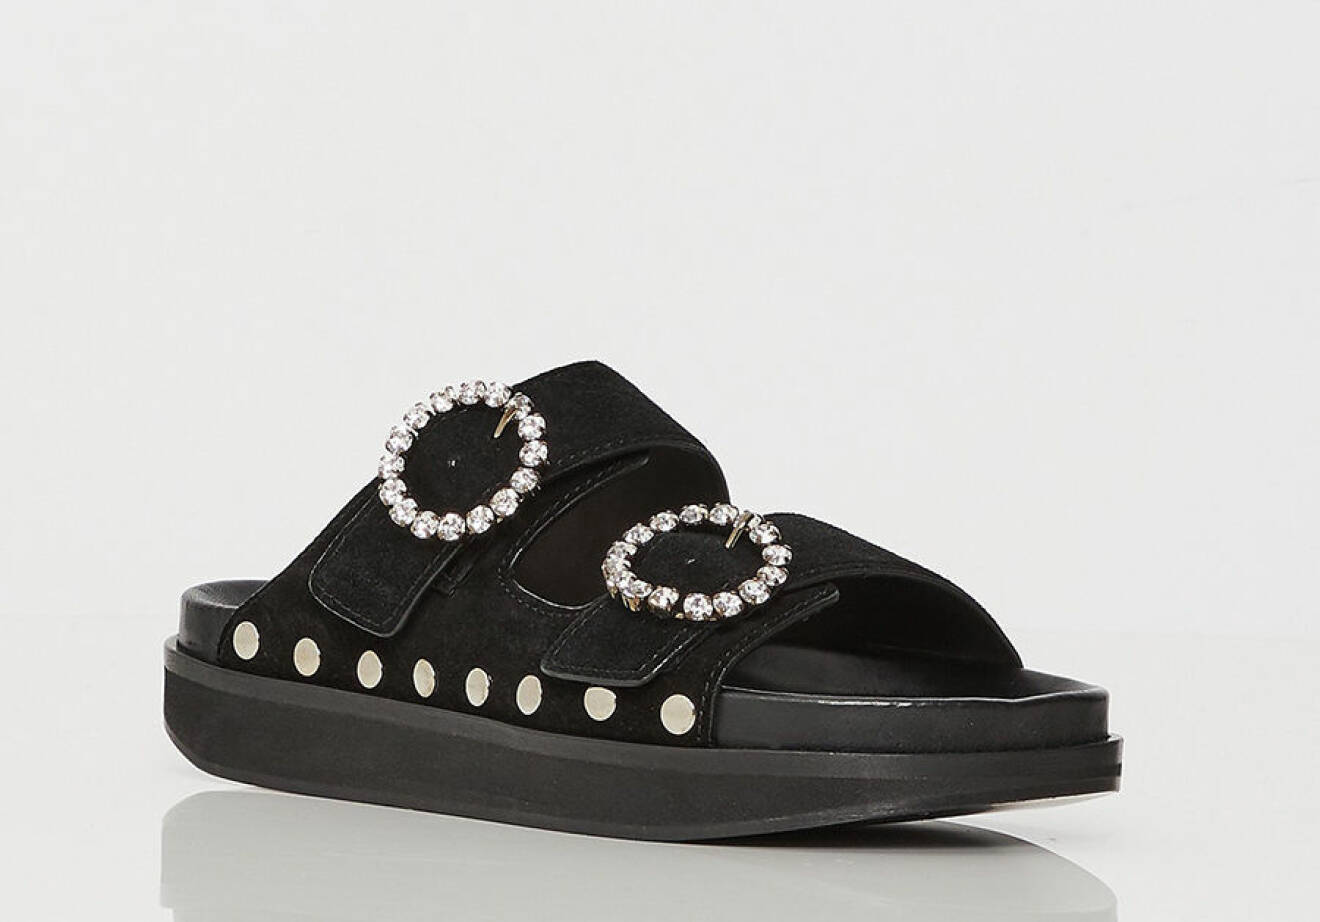 Isabel Marant svart sandal med strasspänne